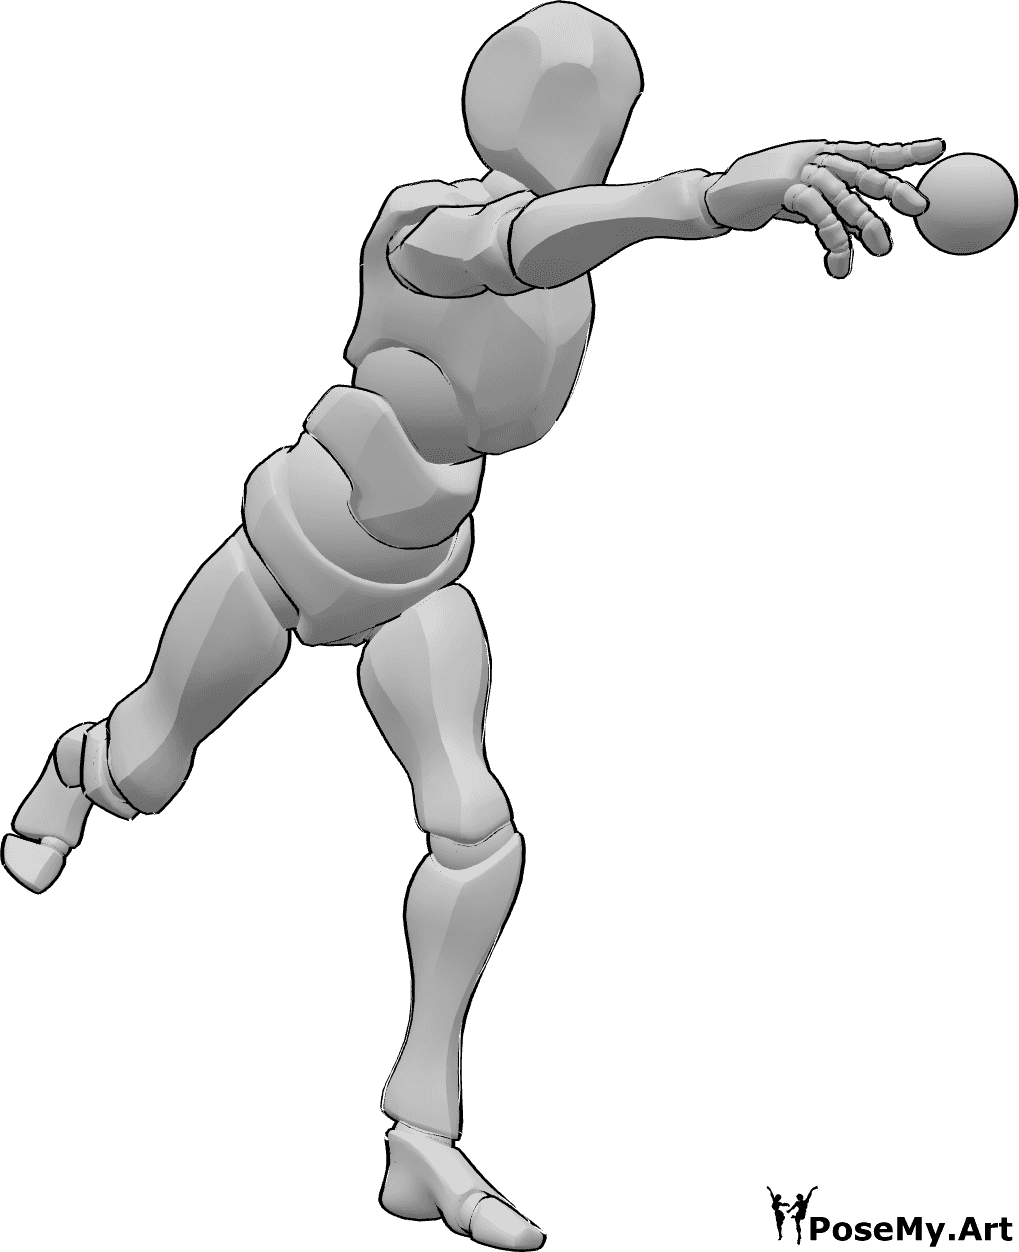 Referência de poses- Pose de lançamento de basebol - O jogador de basebol está de pé e atira a bola com a mão direita